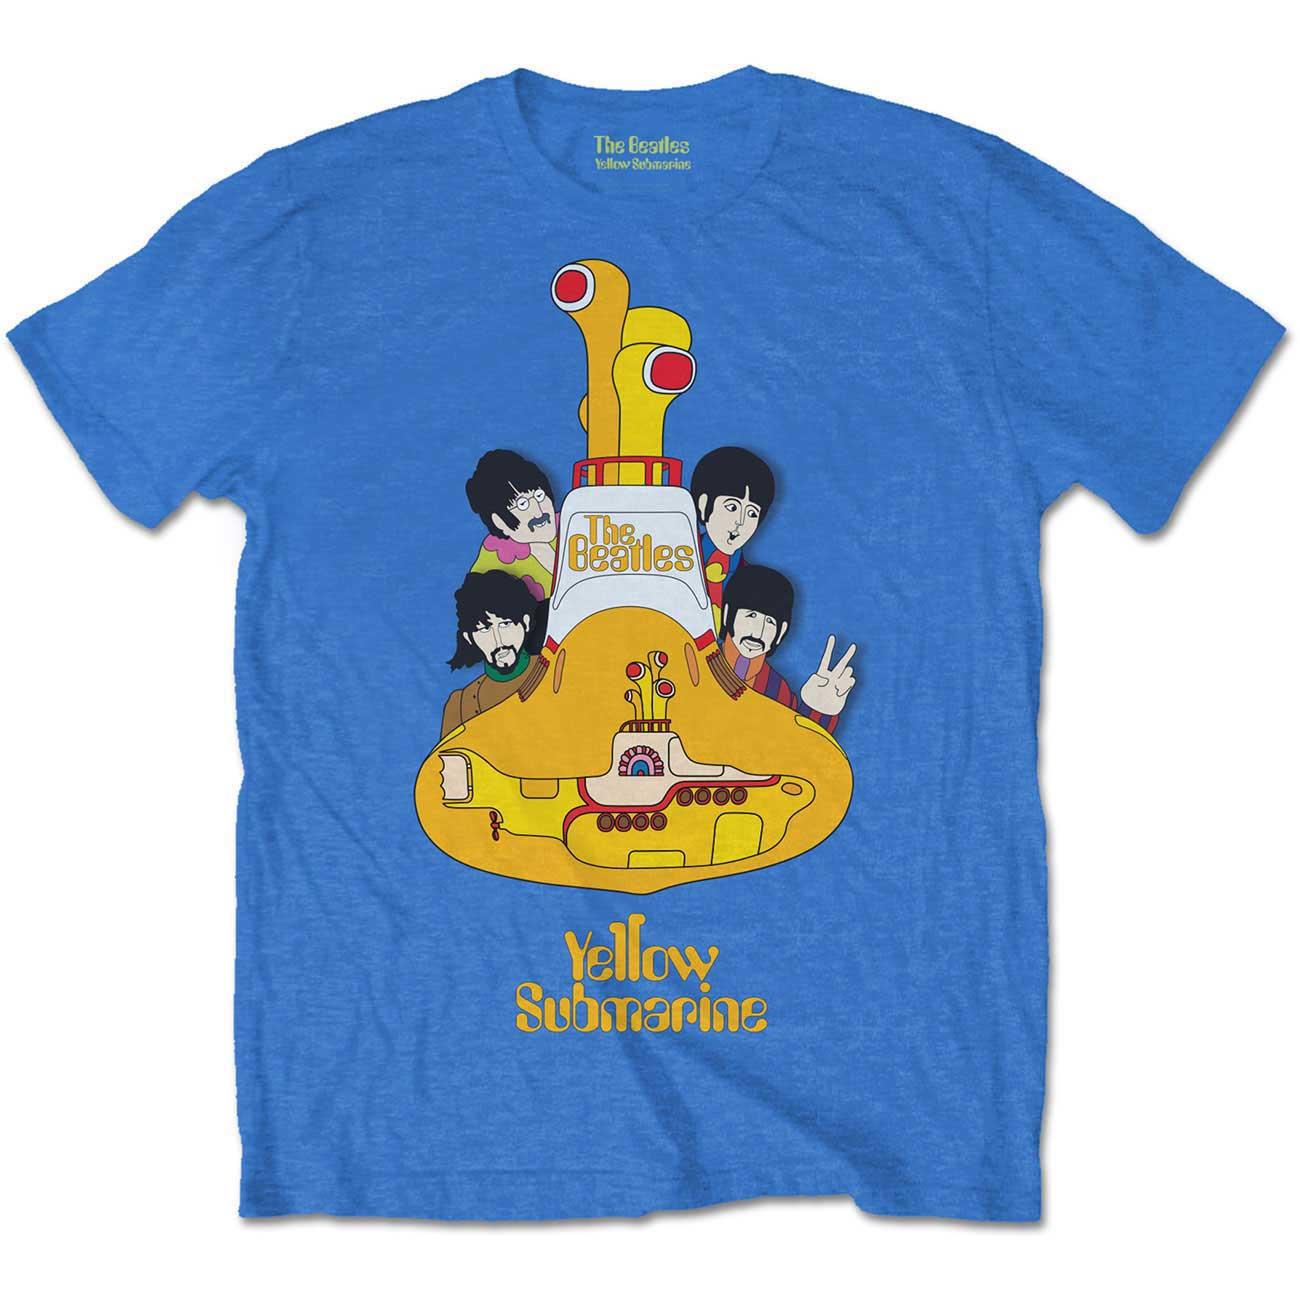 (ビートルズ) The Beatles オフィシャル商品 キッズ・子供 Yellow Submarine Tシャツ コットン 半袖 トップス 【海外通販】